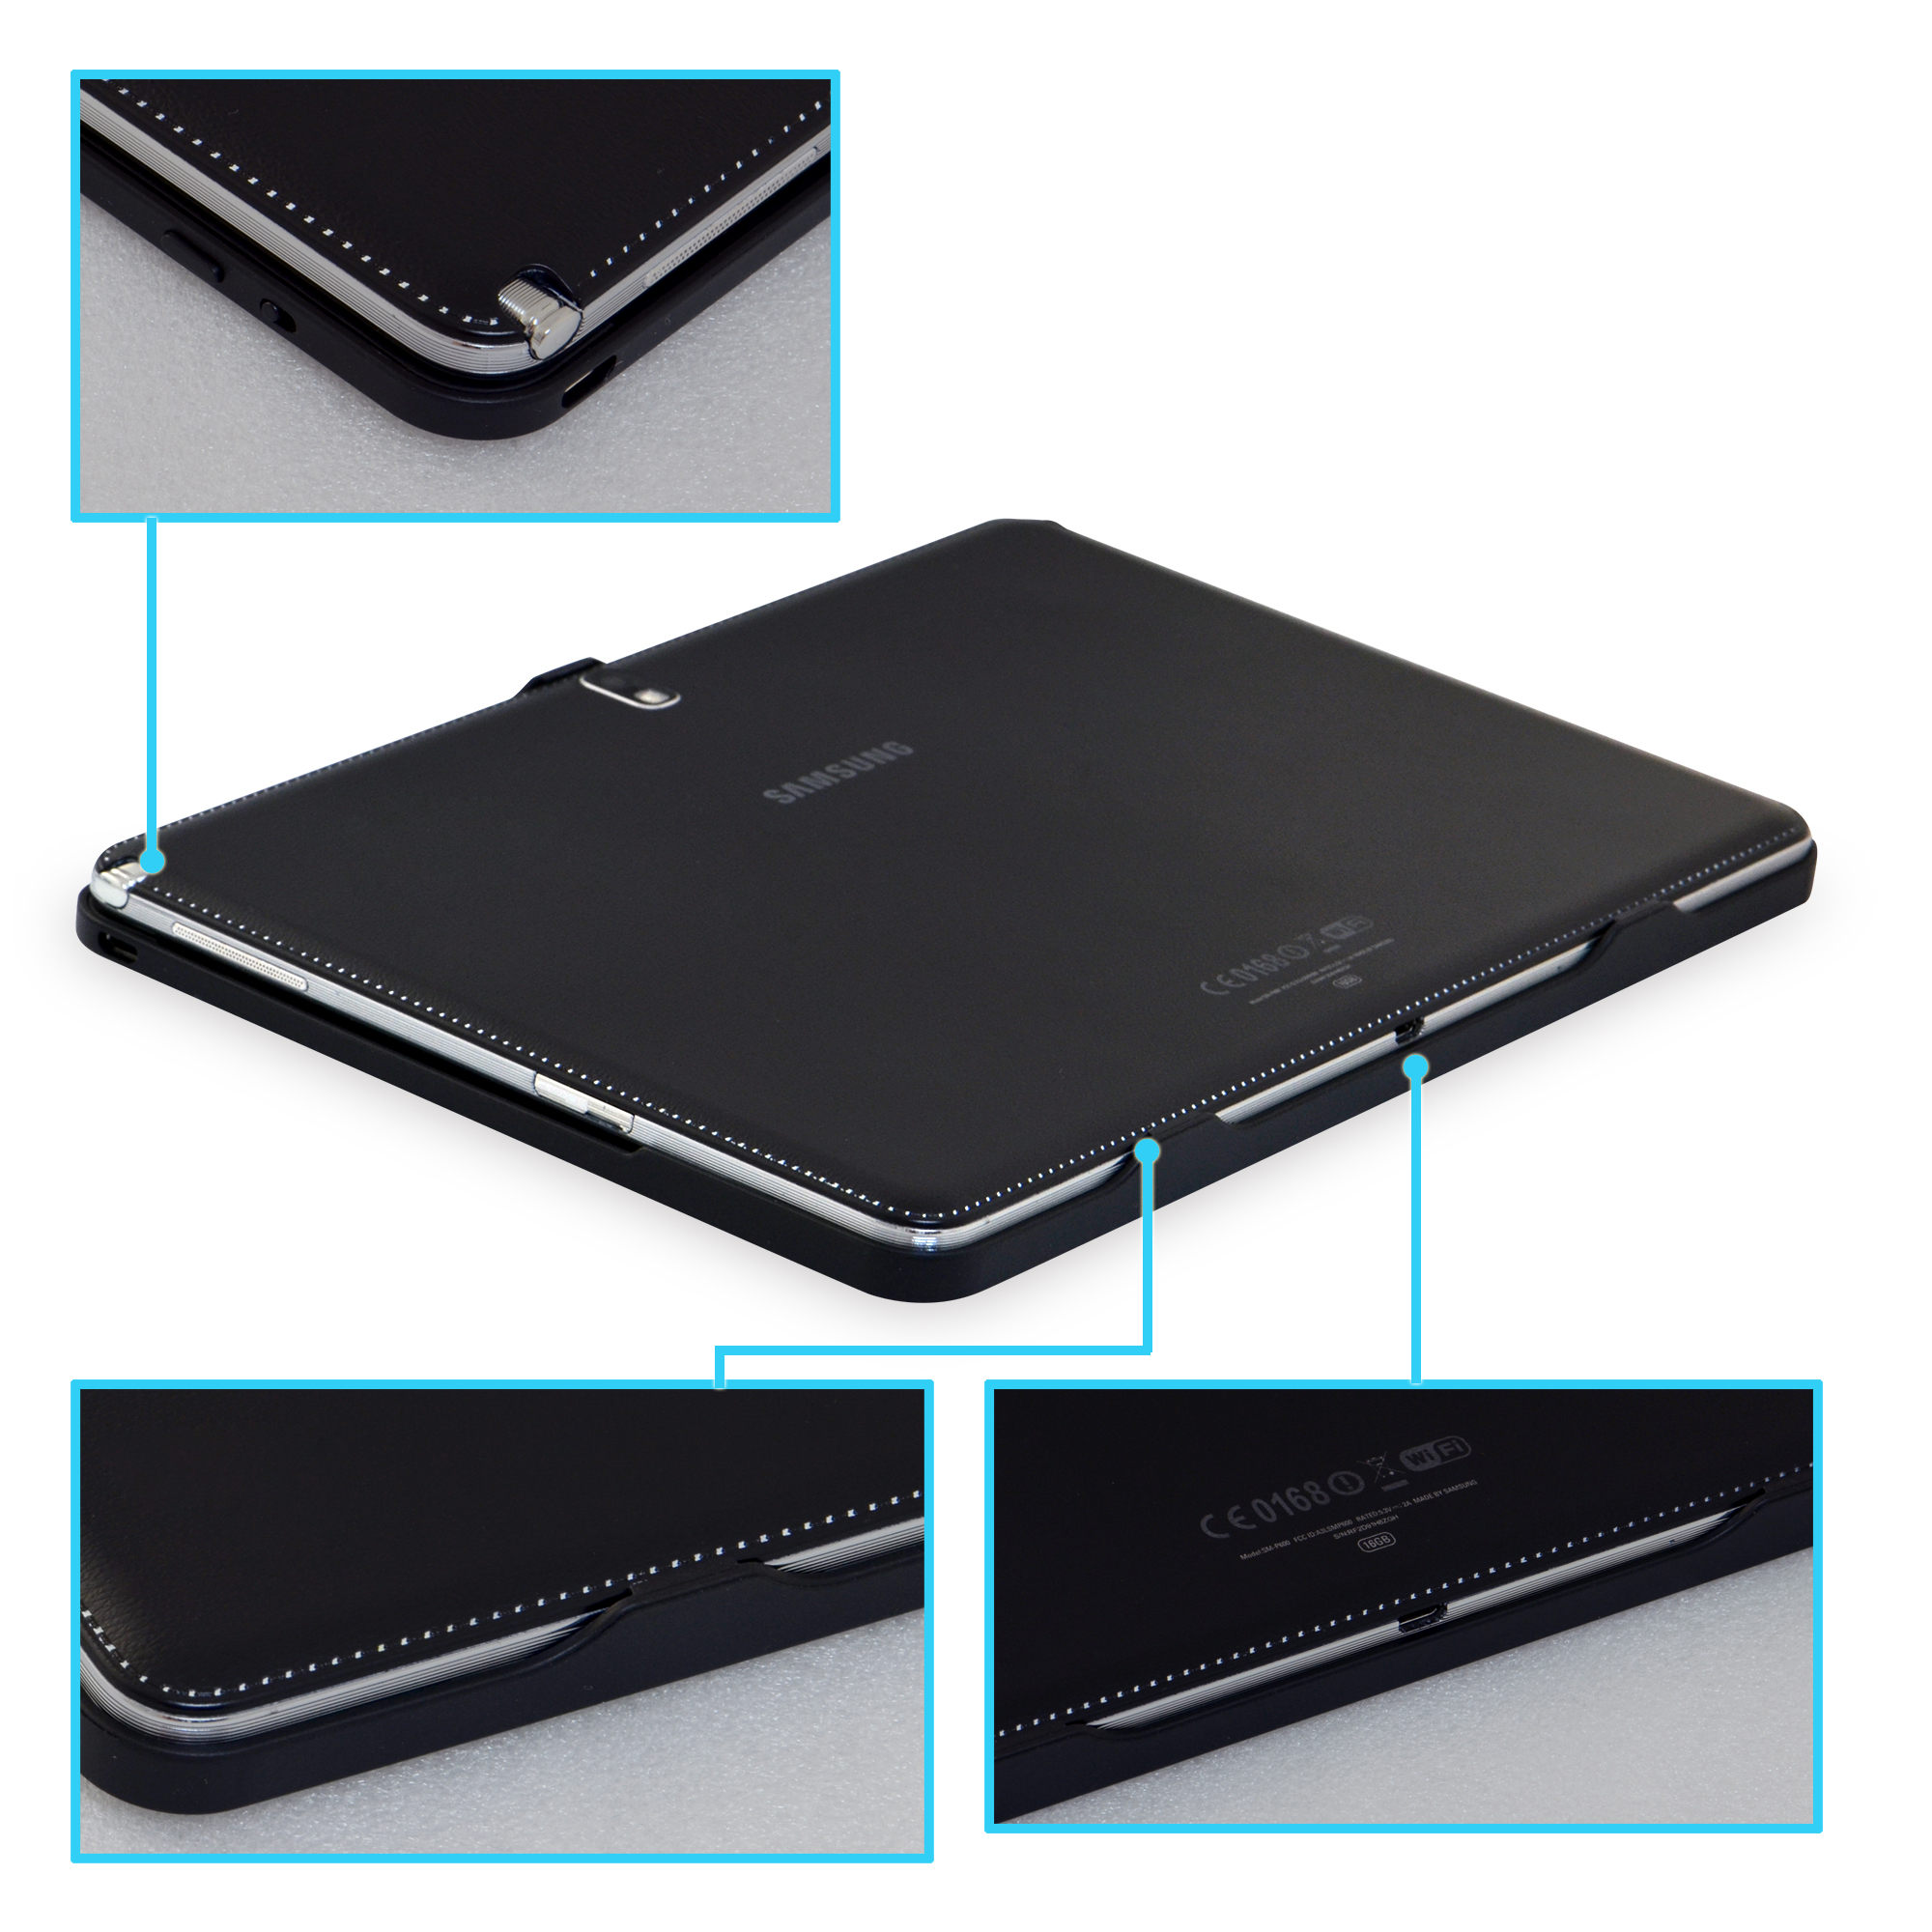 32 GB DURAGADGET Ladegerät Handy Ladekabel für Samsung Galaxy Note 10.1 2014 Edition Tablet PC 10 Zoll SM-P605 P601/P600/16 GB 5 Jahre Garantie 